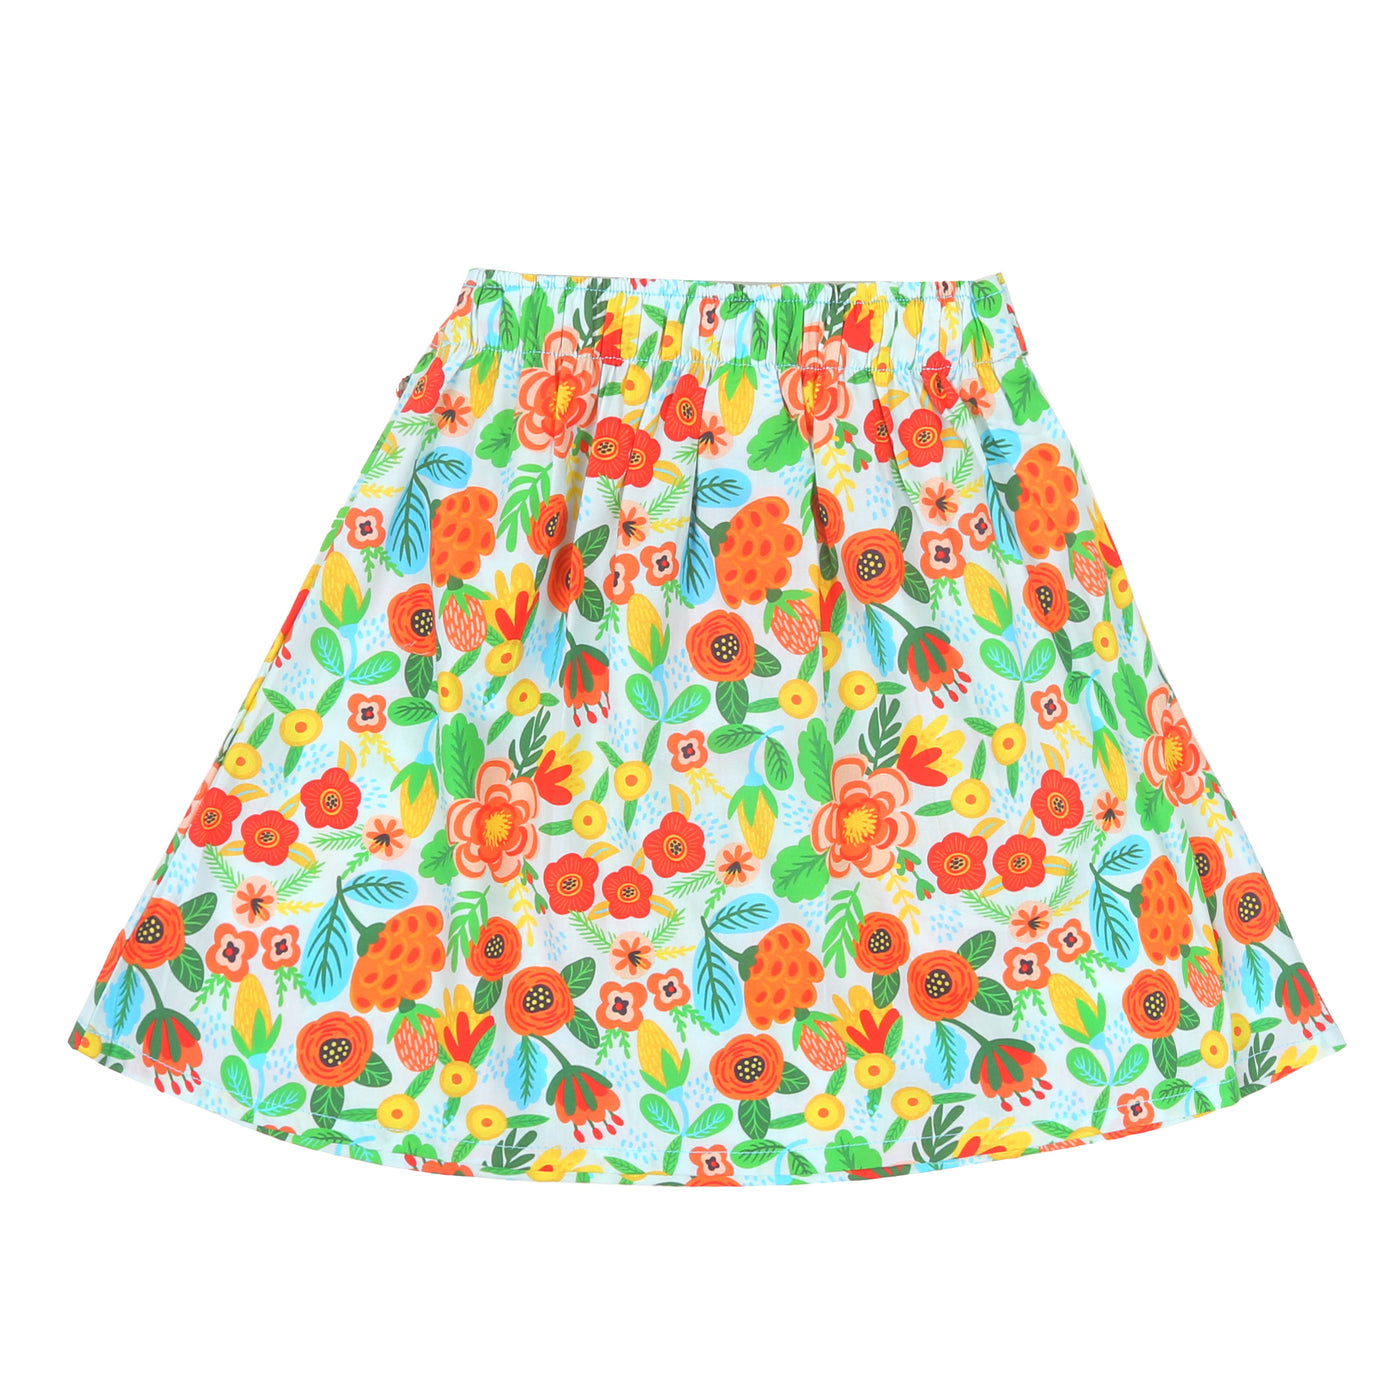 Infant Girls Digital Print Short Skirt Flower Power - Multi